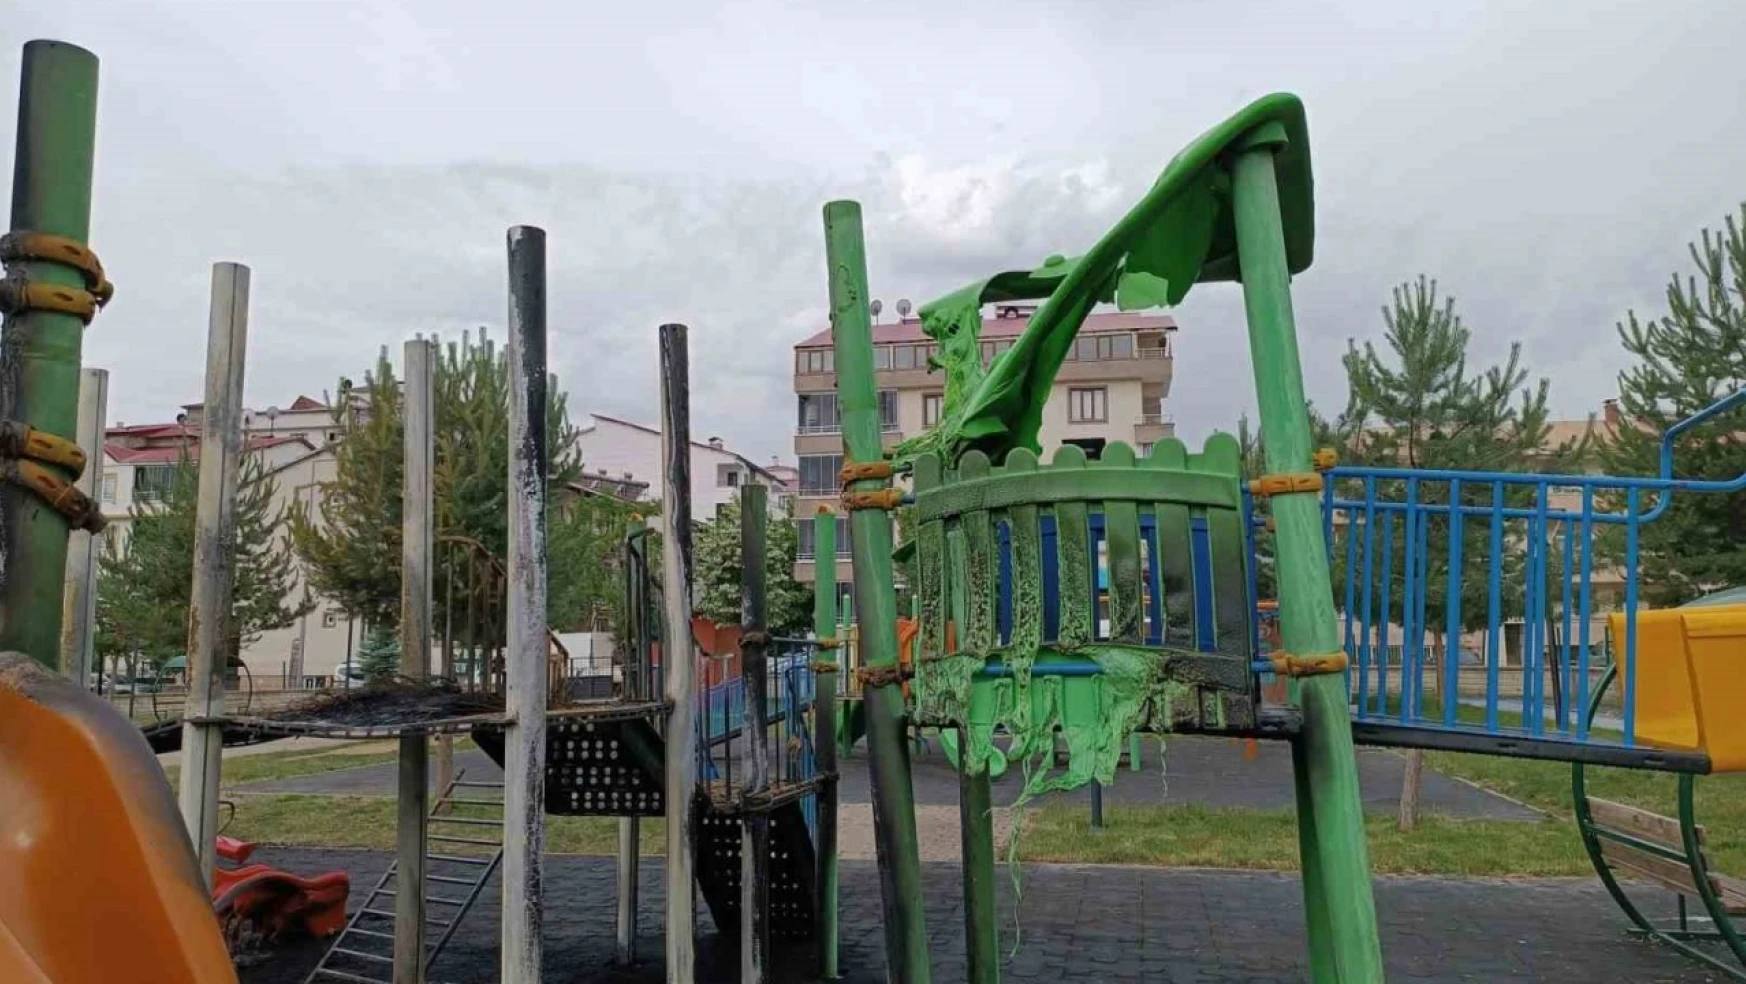 Bingöl'de ateşe verilen araç lastiği, oyun parkını kullanılmaz hale getirdi